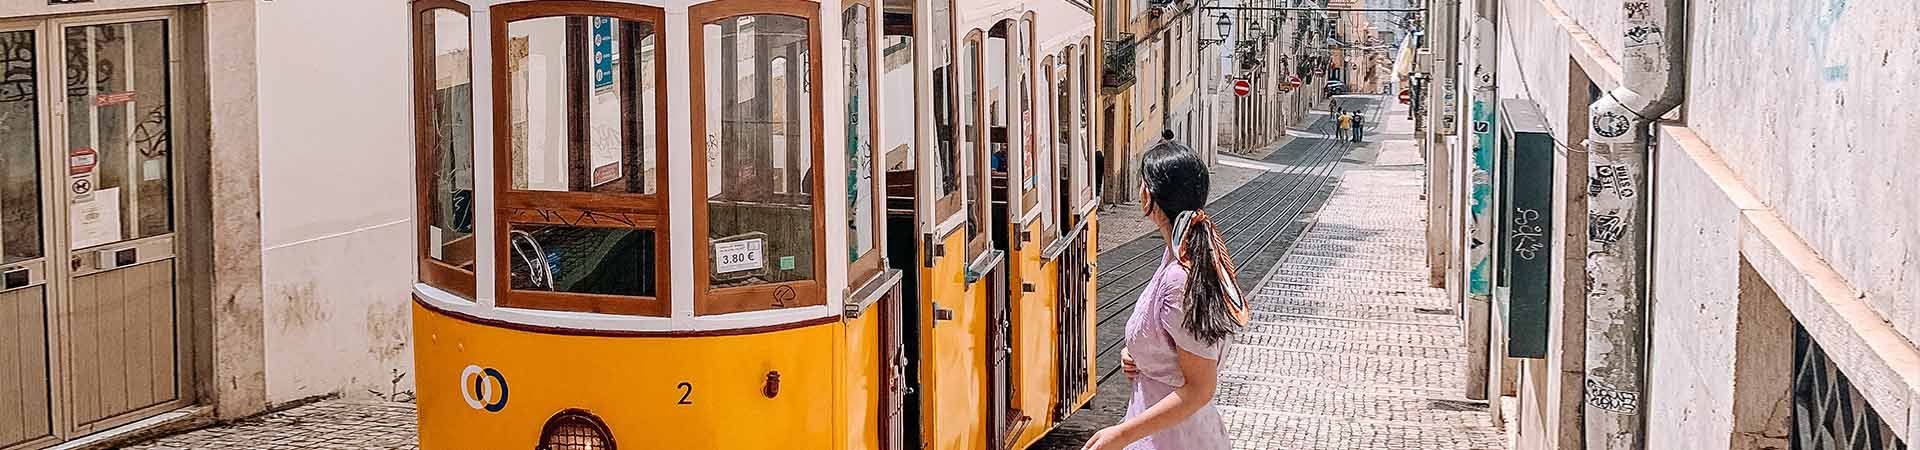 Pośrodku zdjęcia żółto-biały lizboński tramwaj przejeżdża jedną z brukowanych uliczek Lizbony, wzdłuż których stoją budynki o starych fasadach. Na prawo od tramwaju stoi ubrana w liliową sukienkę brunetka z włosami związanymi kolorową chustką i patrzy na tramwaj.